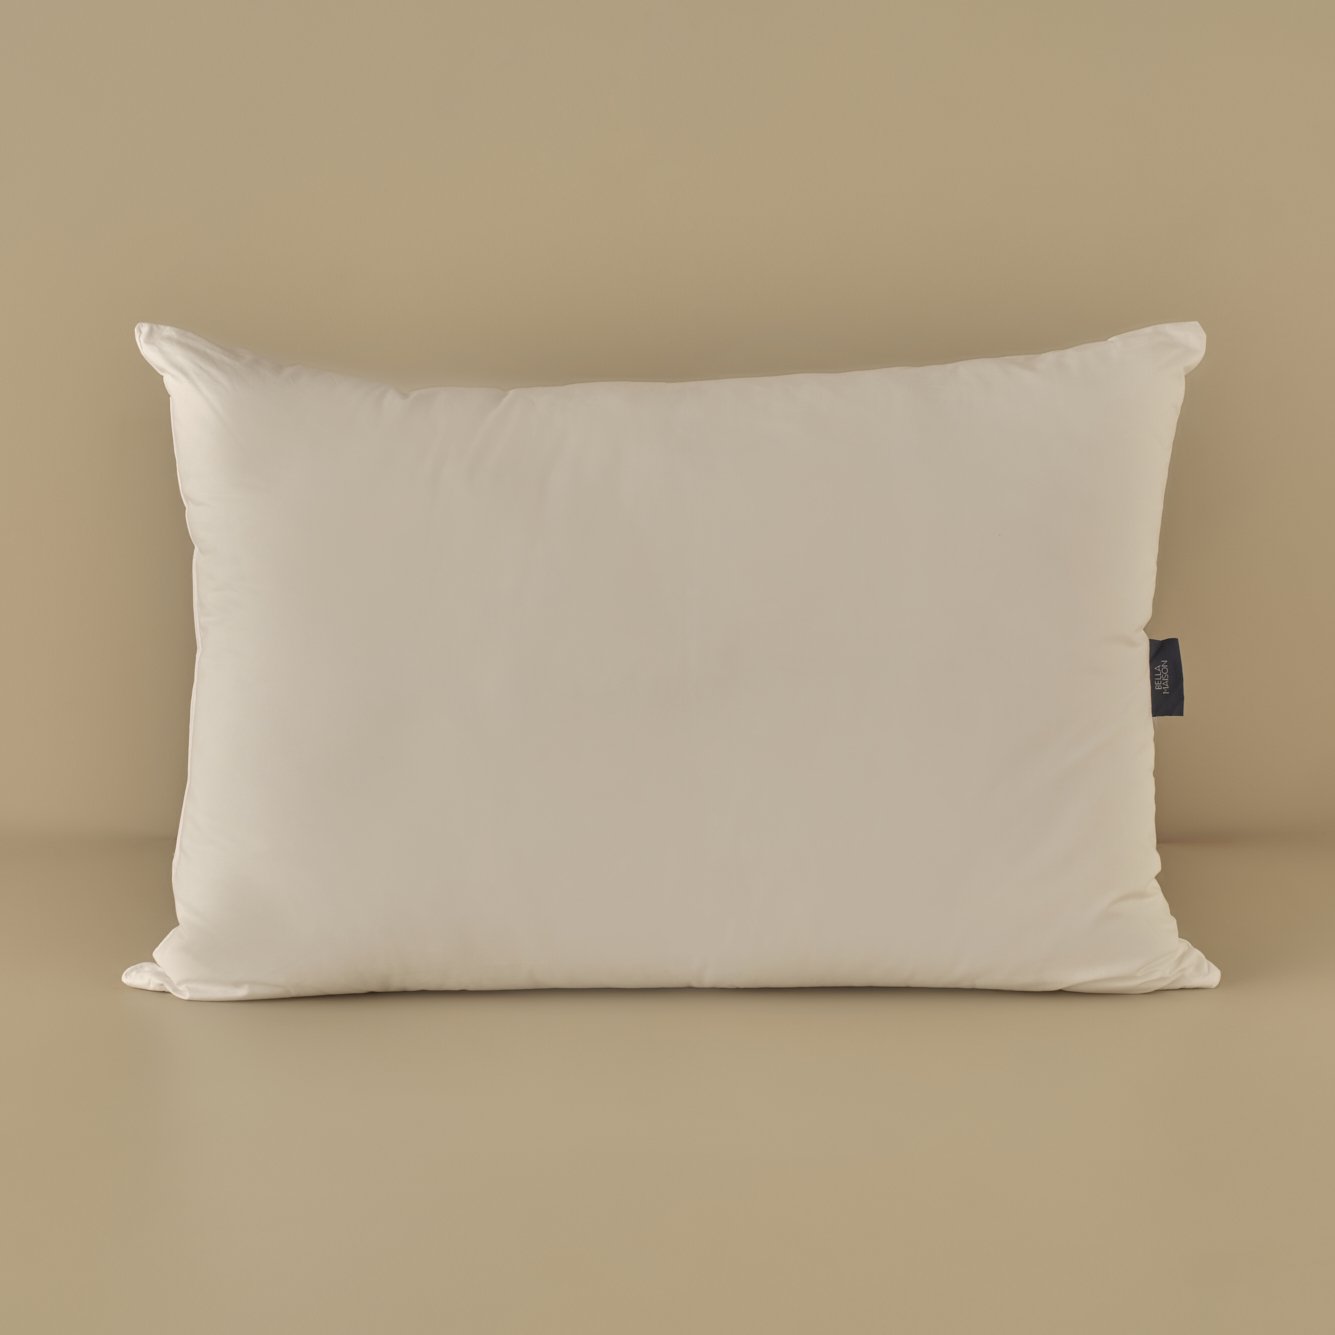 Mikrojel Yastık Beyaz (50x70 cm)